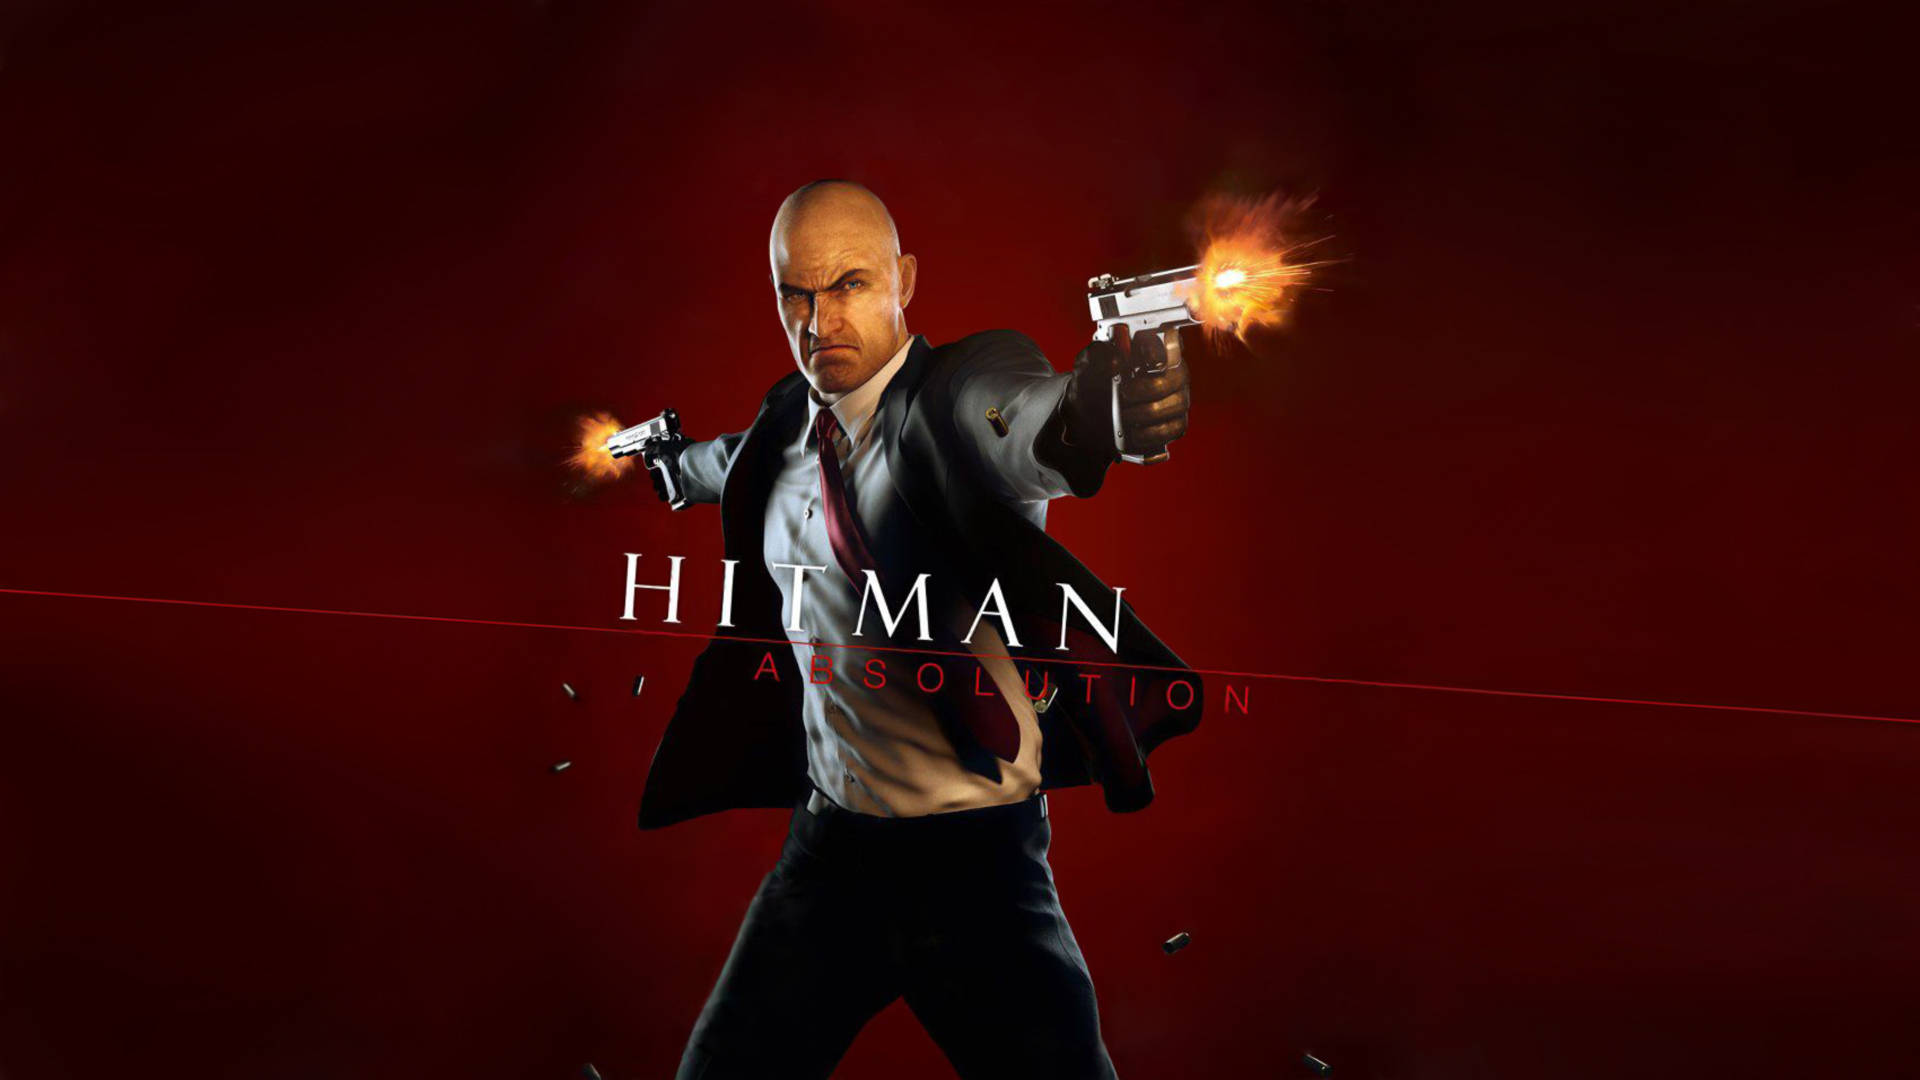 Hitman Absolution Hd Fires Gun Background